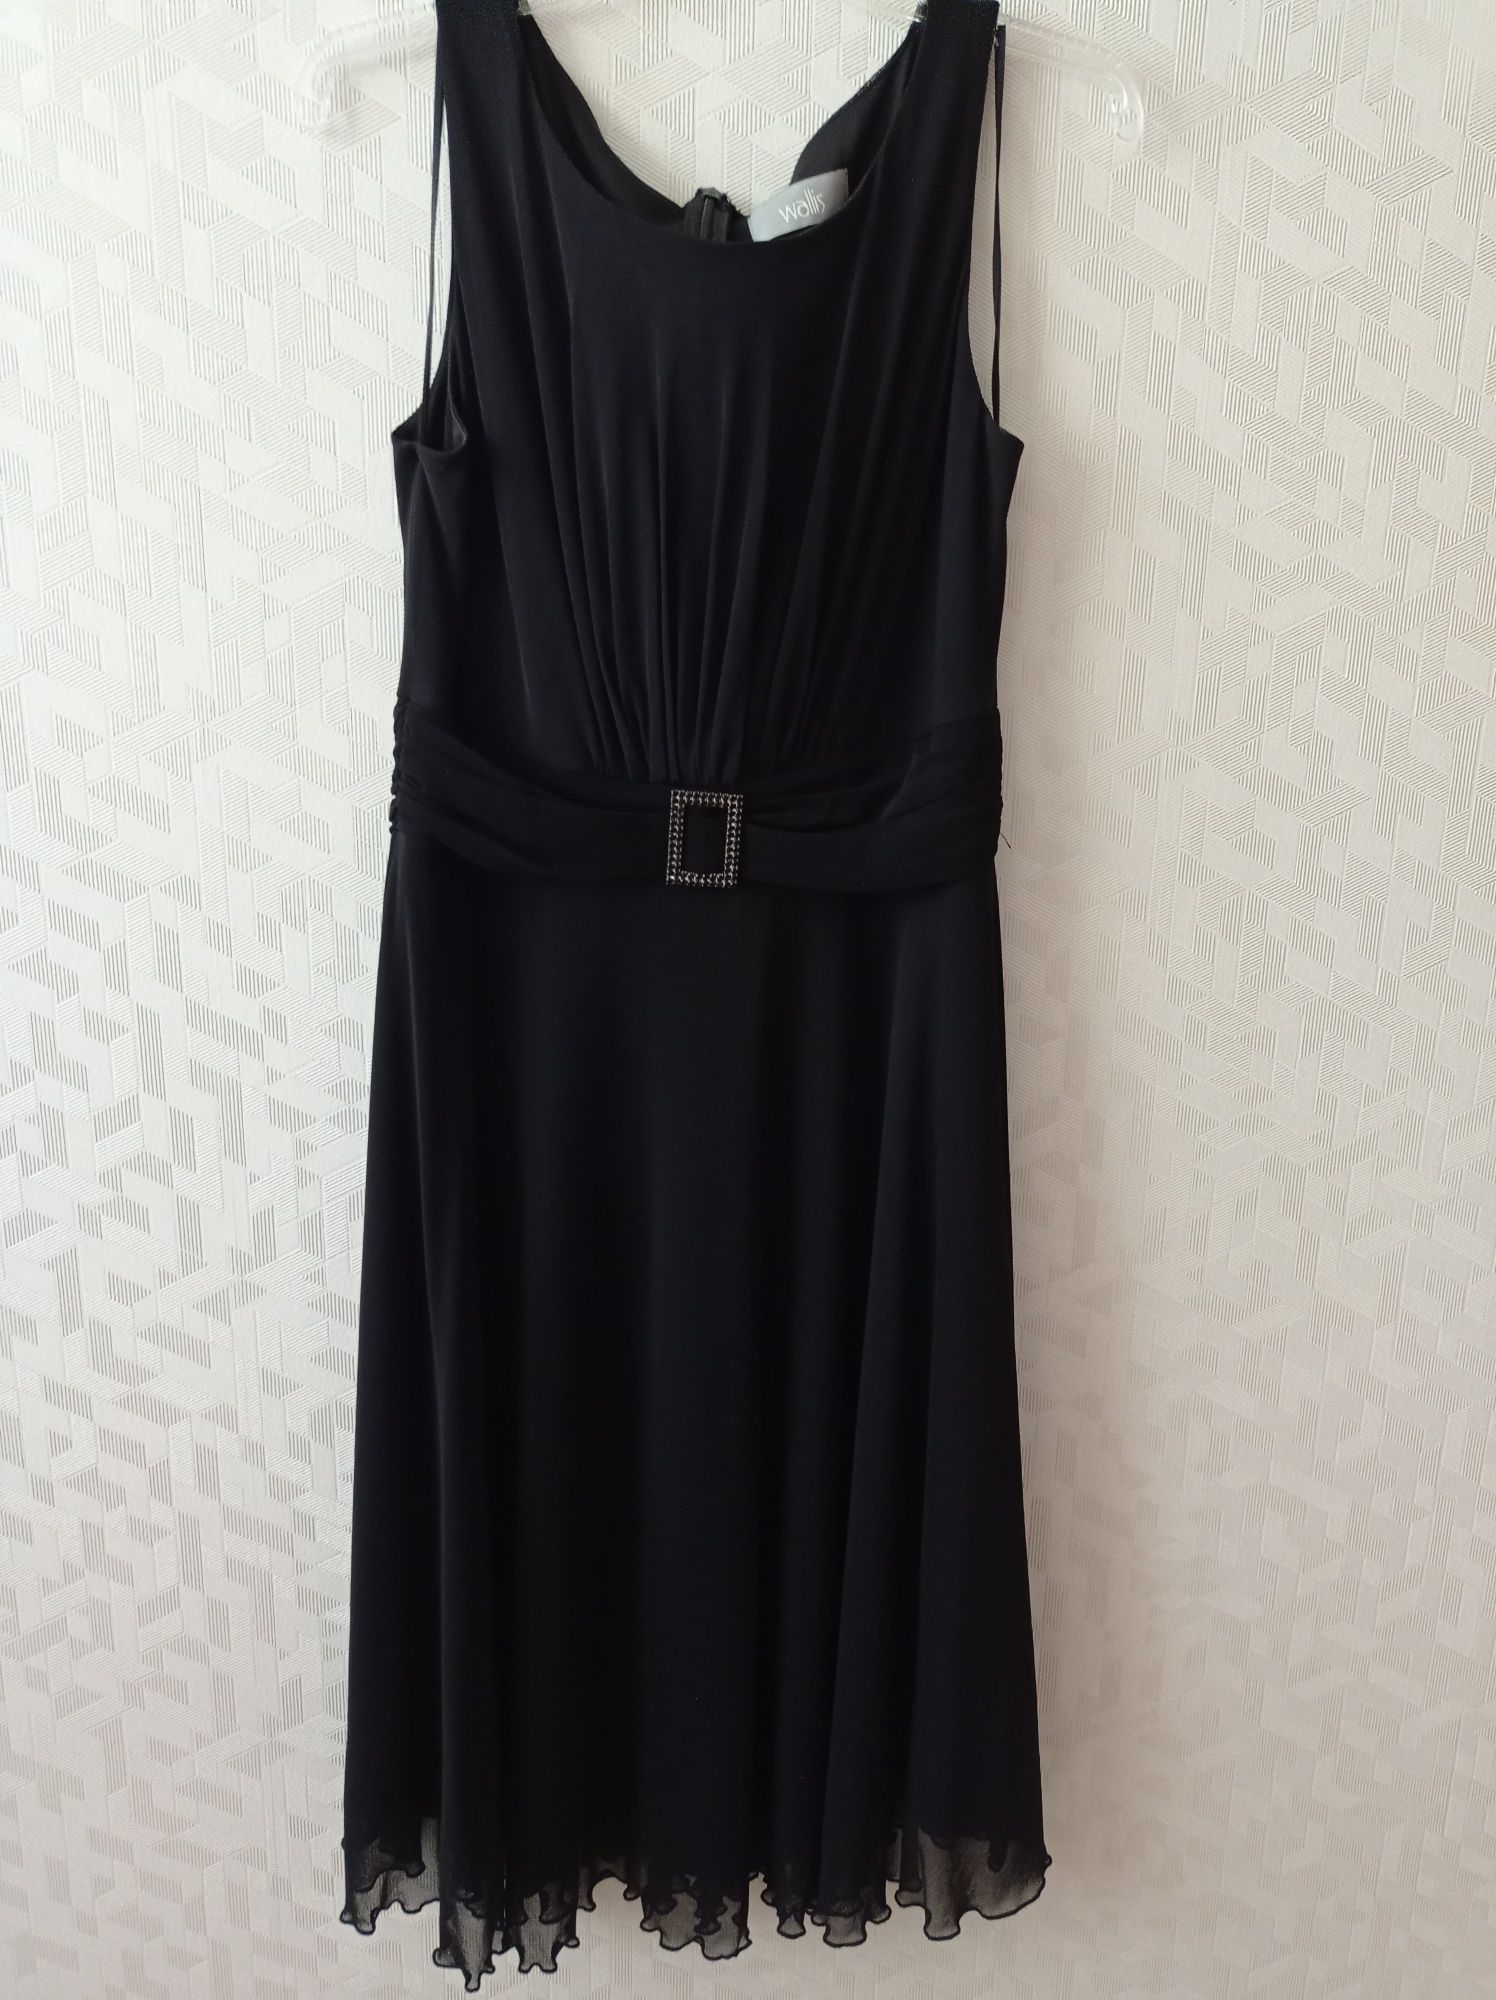 Czarna sukienka firmy Vallis